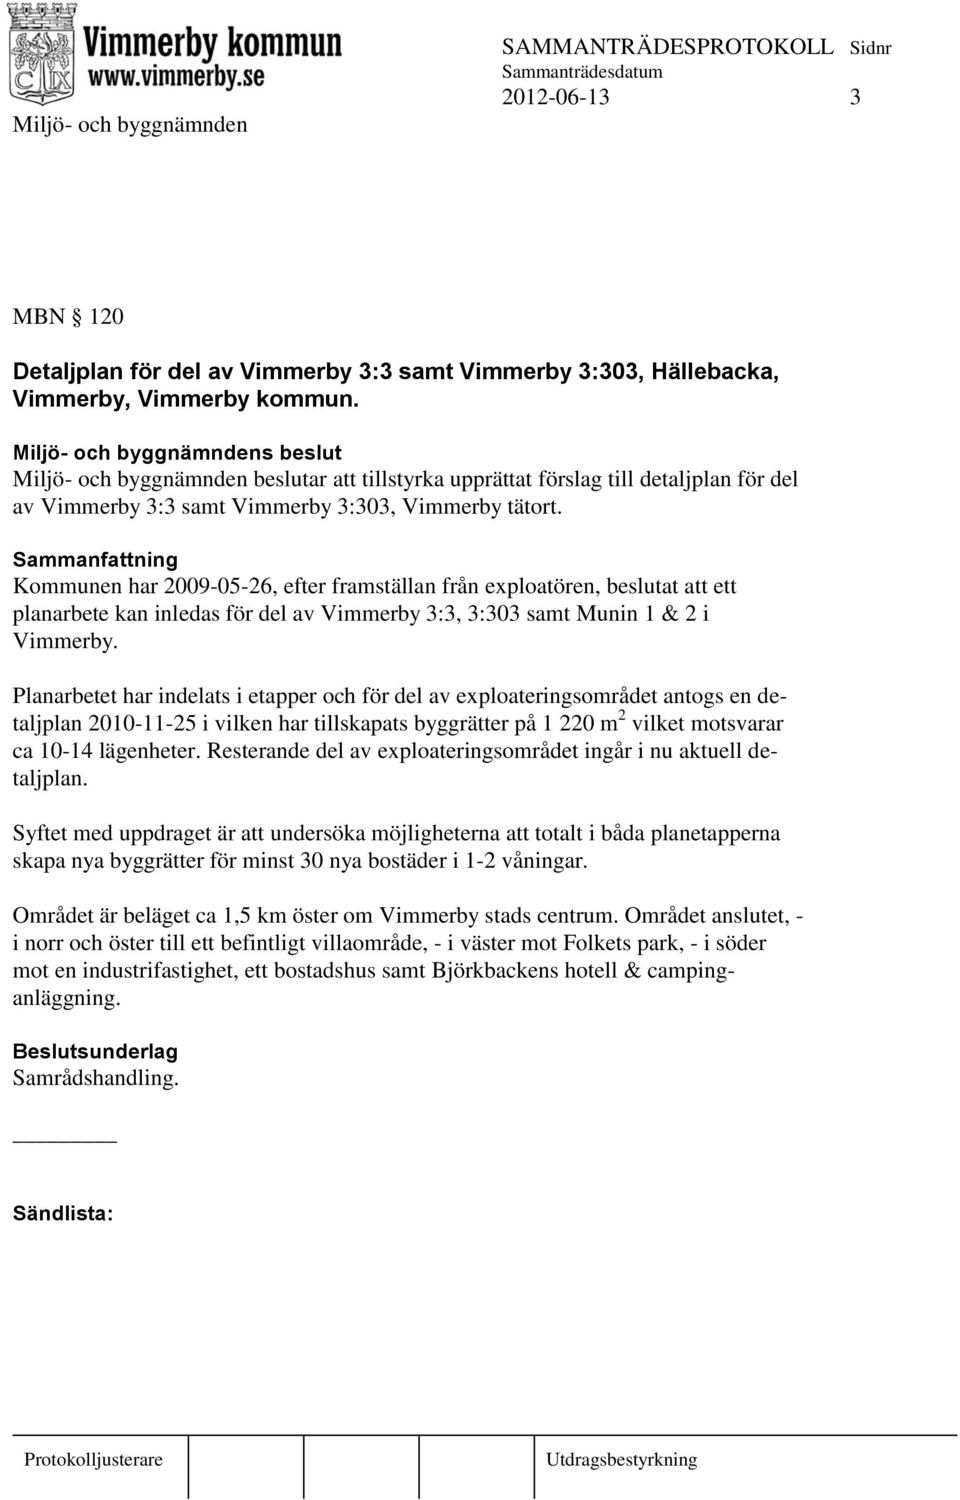 Kommunen har 2009-05-26, efter framställan från exploatören, beslutat att ett planarbete kan inledas för del av Vimmerby 3:3, 3:303 samt Munin 1 & 2 i Vimmerby.